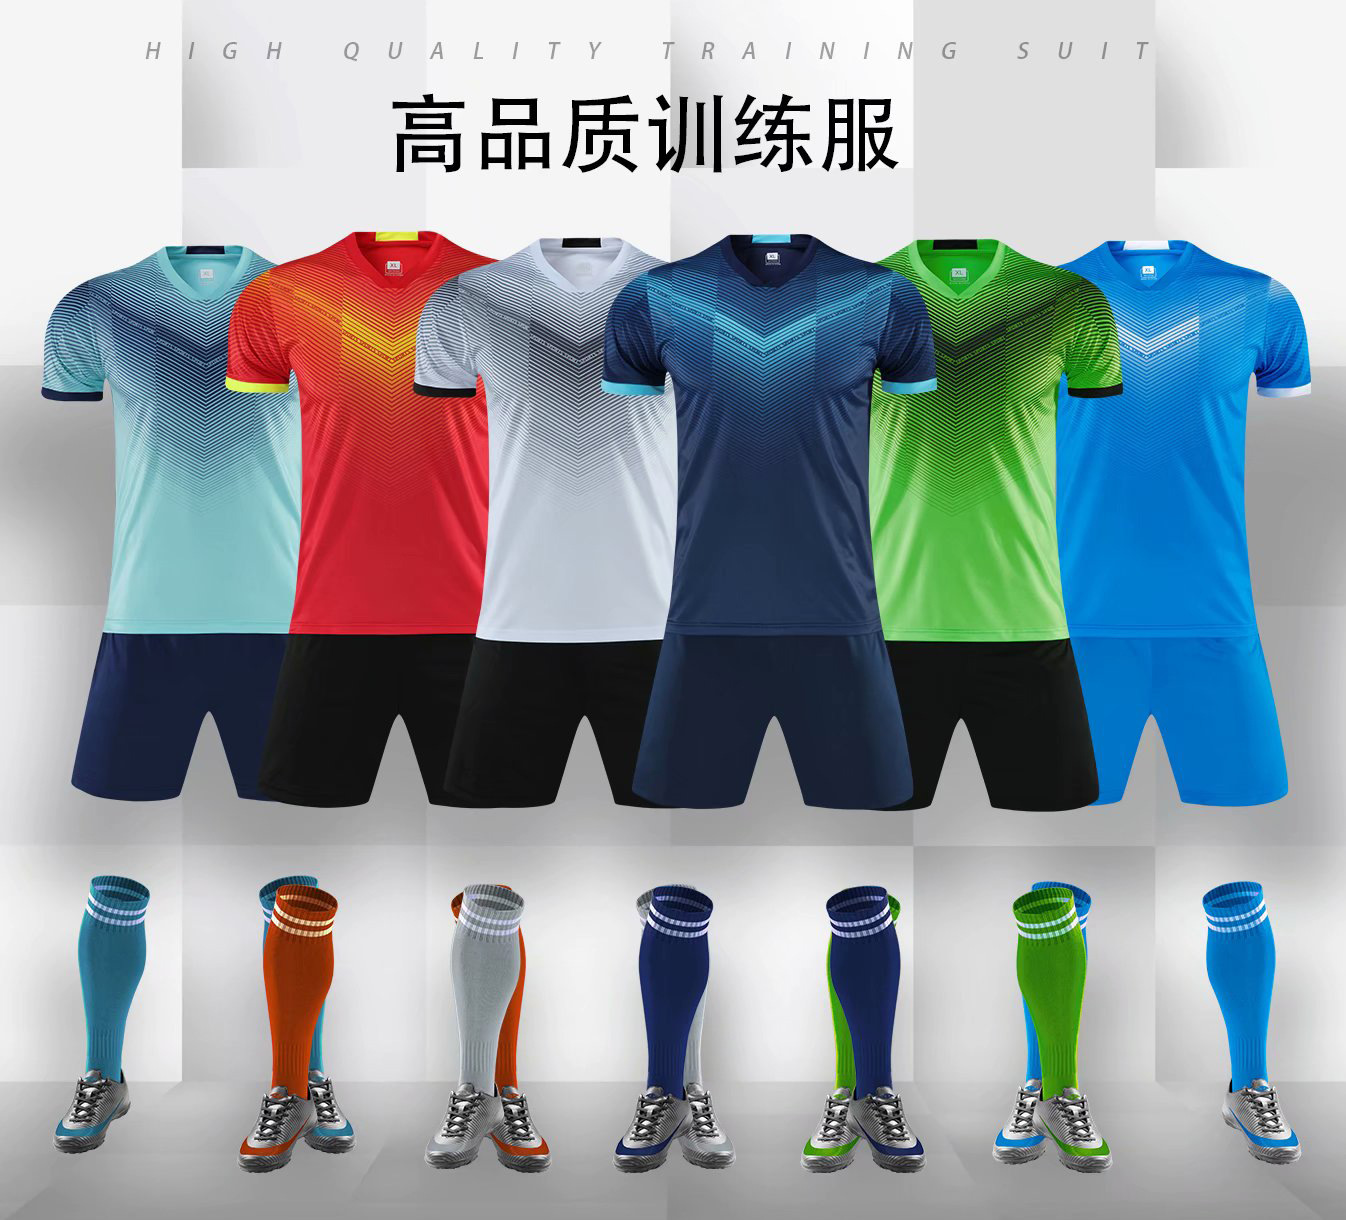 新款足球服套装透气吸汗运动比赛训练服成人儿童比赛队服印字印号